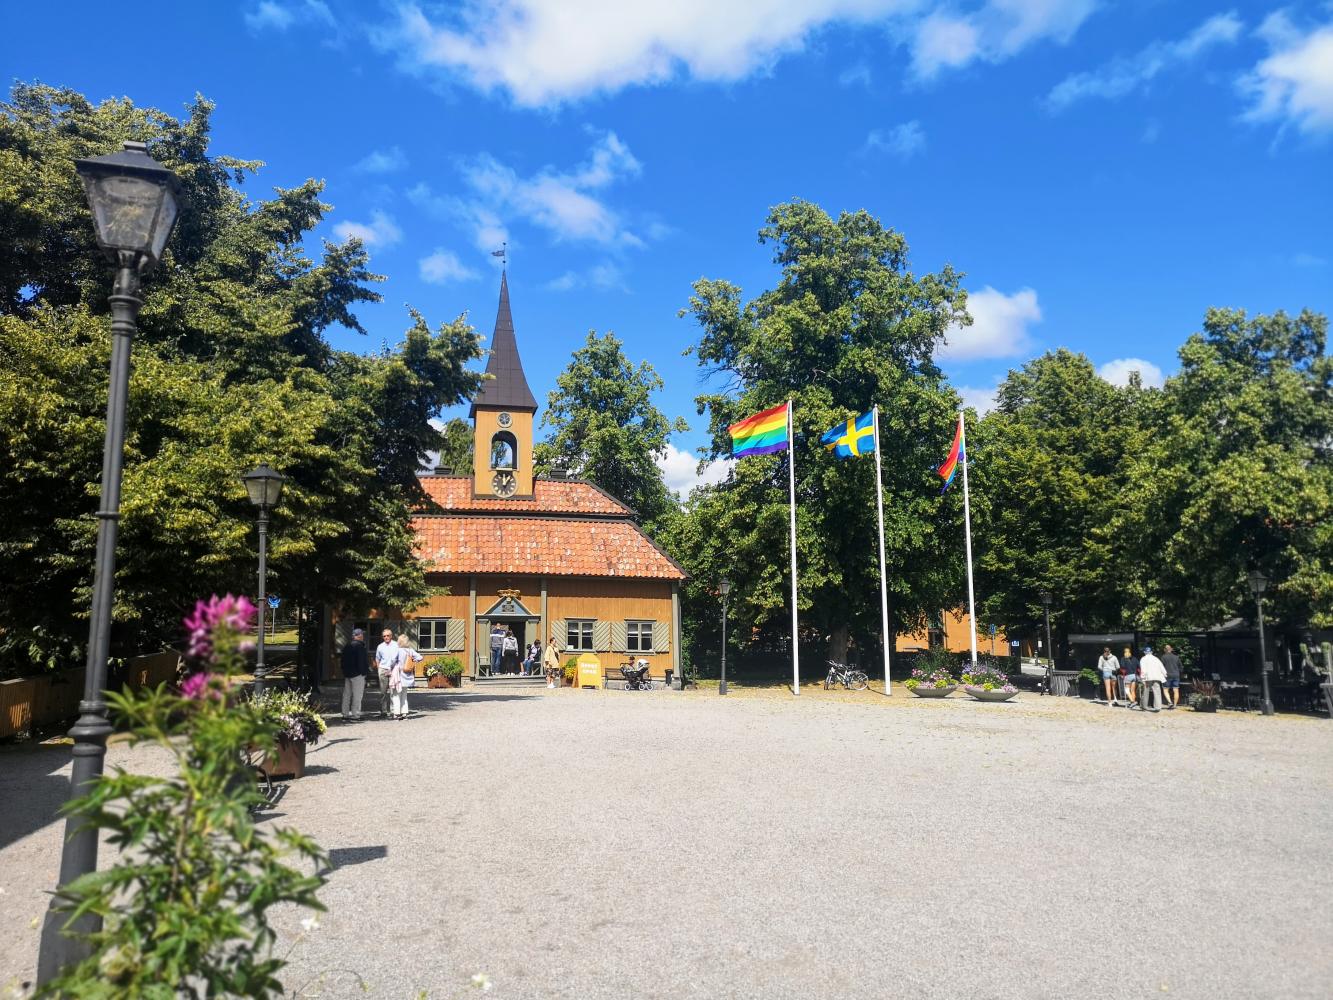 Sveriges minsta rådhus ligger i Sigtuna